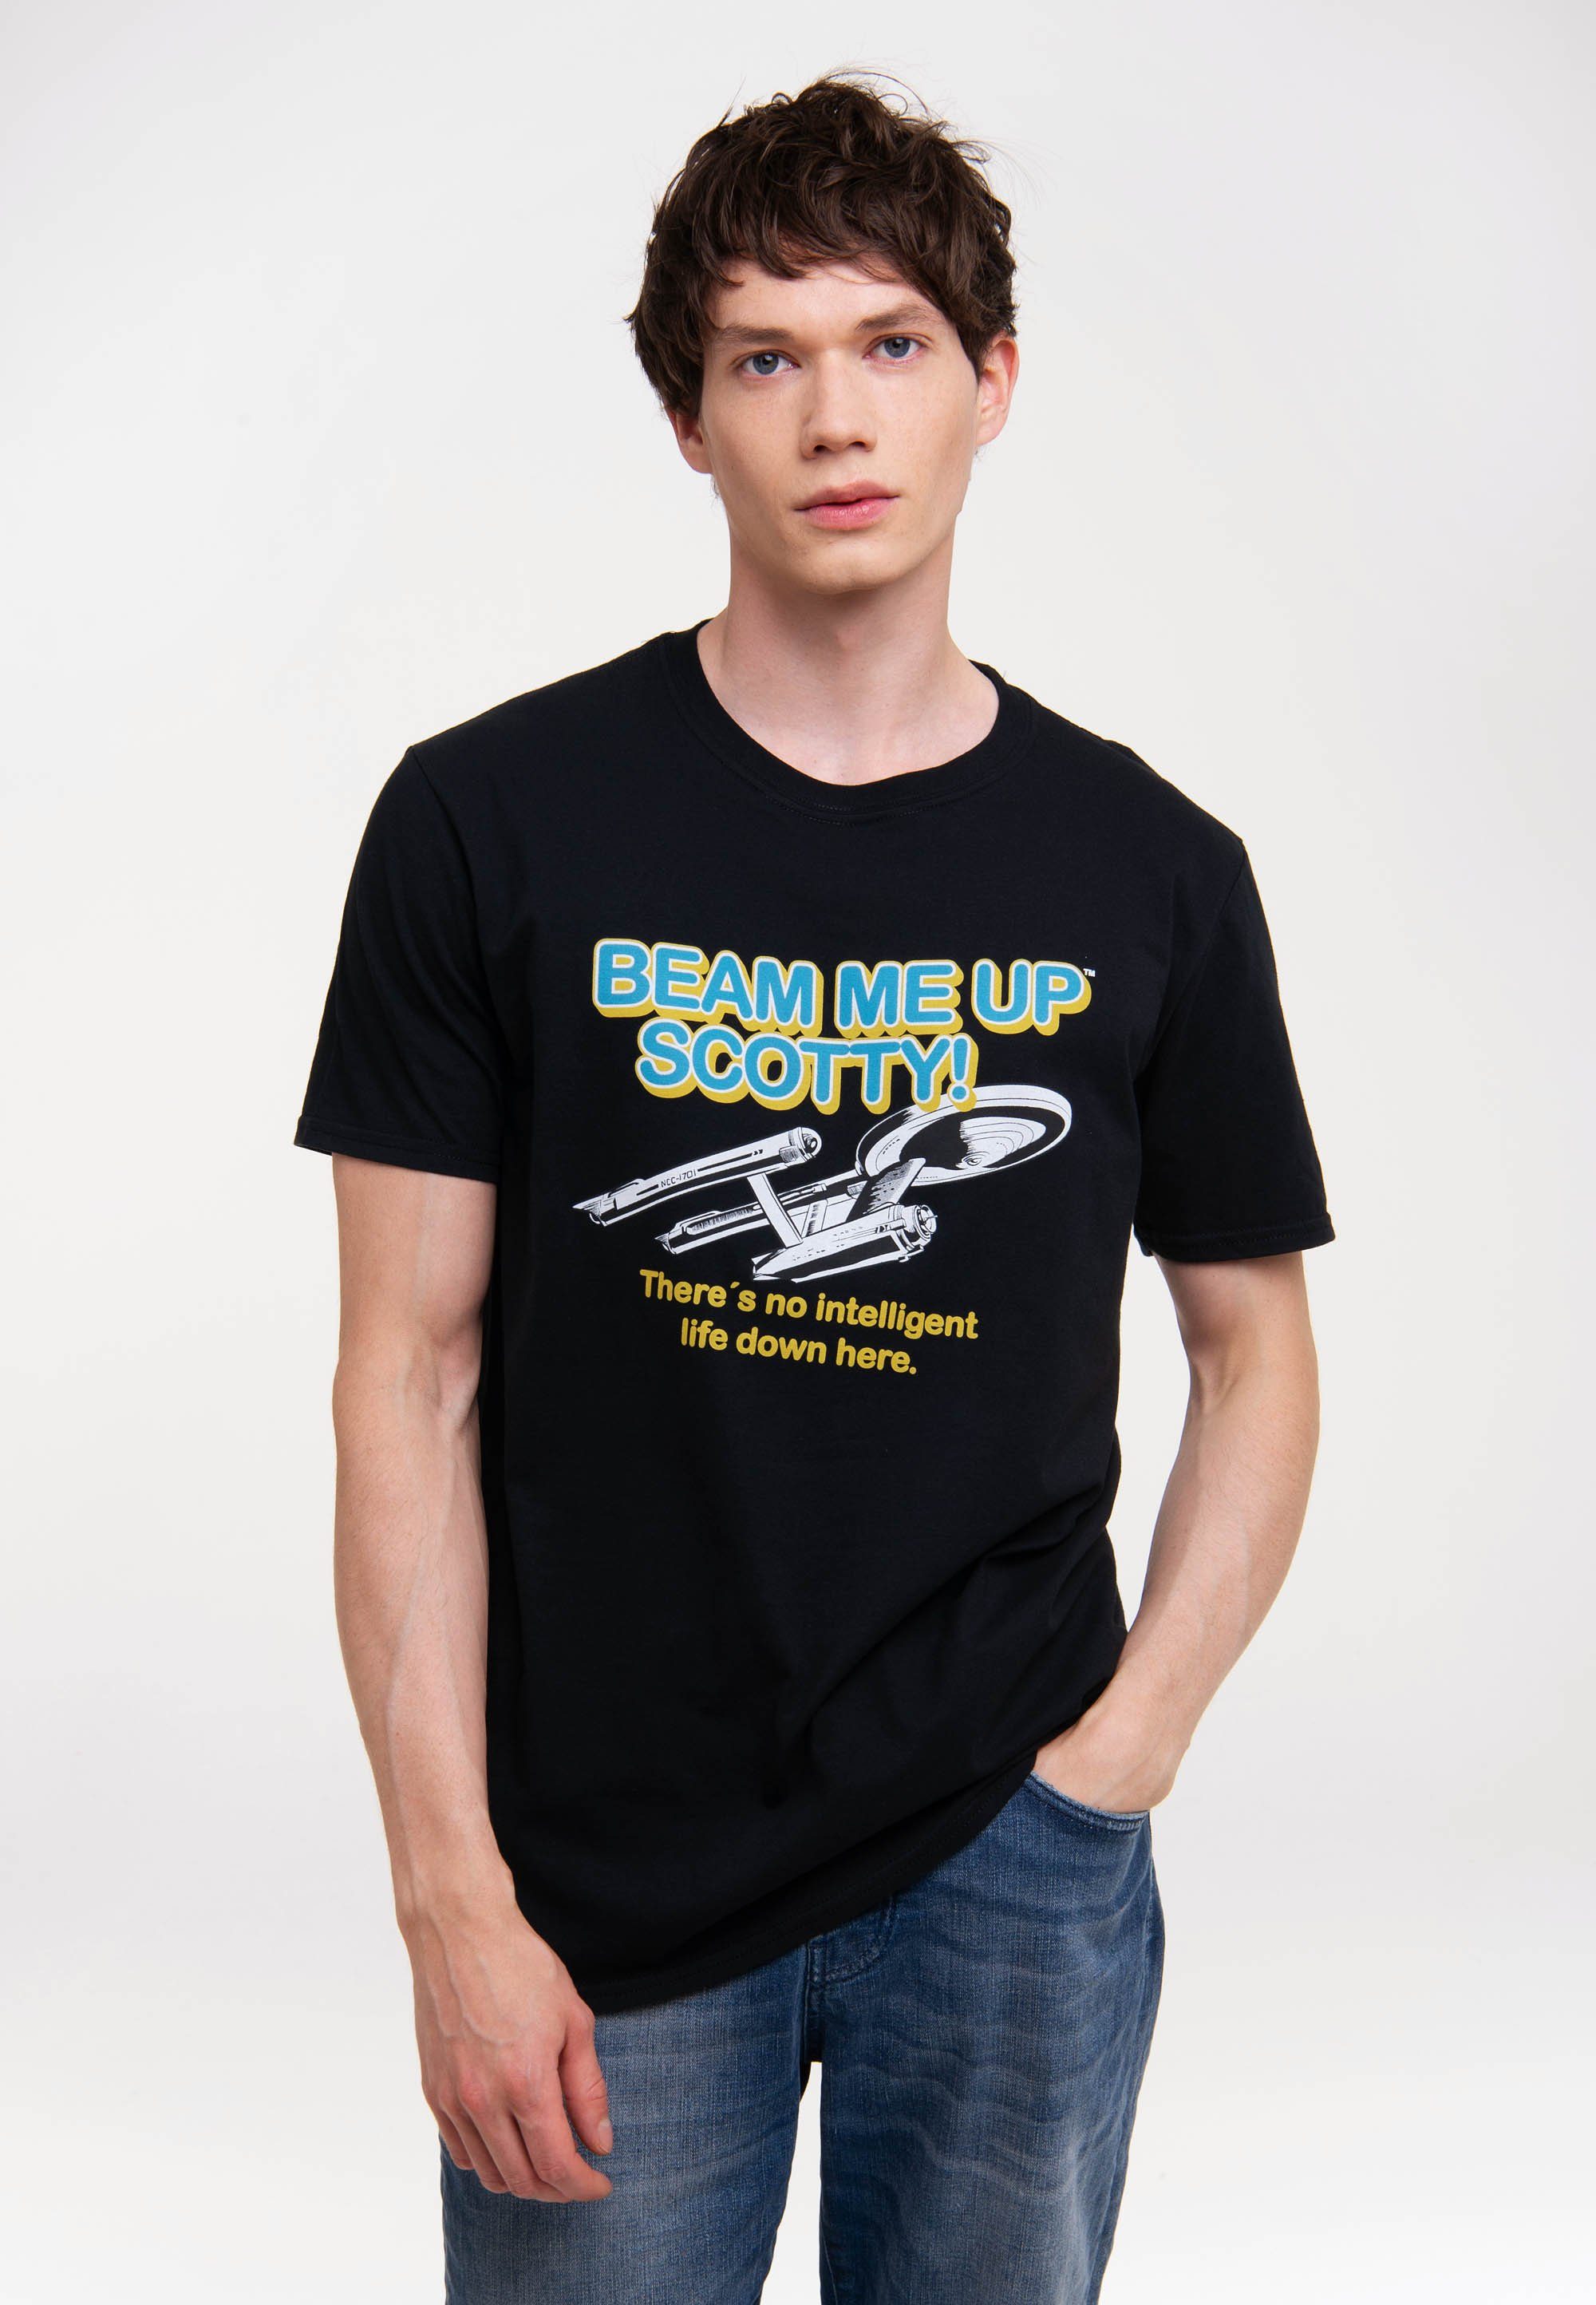 Scotty LOGOSHIRT Star - Up Up Beam mit Me Beam Me Trek T-Shirt Scotty-Logo